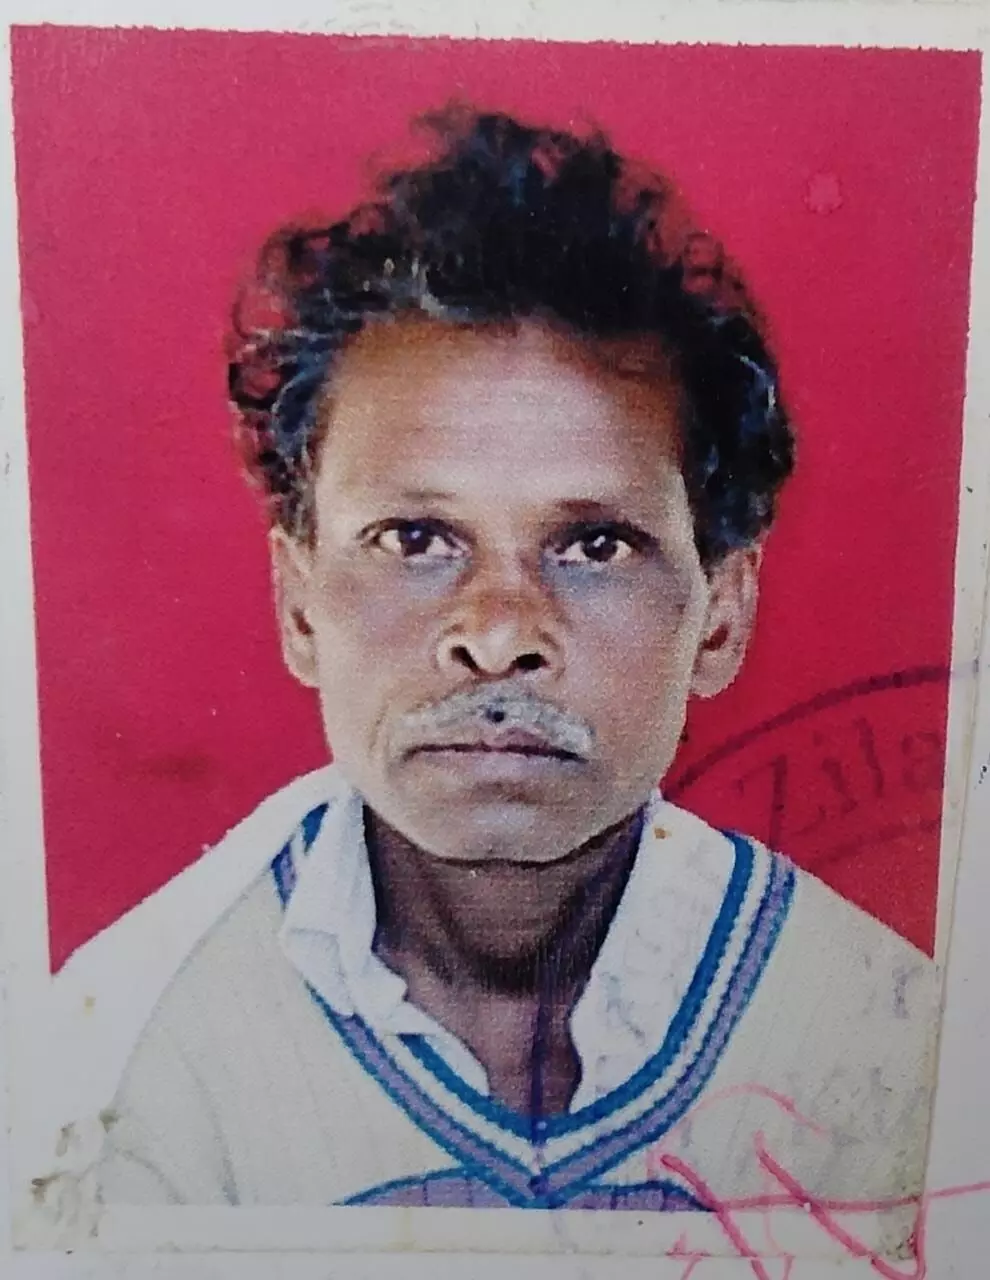 जानसठ क्षेत्र में भाजपा नेता के पिता की गला रेतकर हत्या